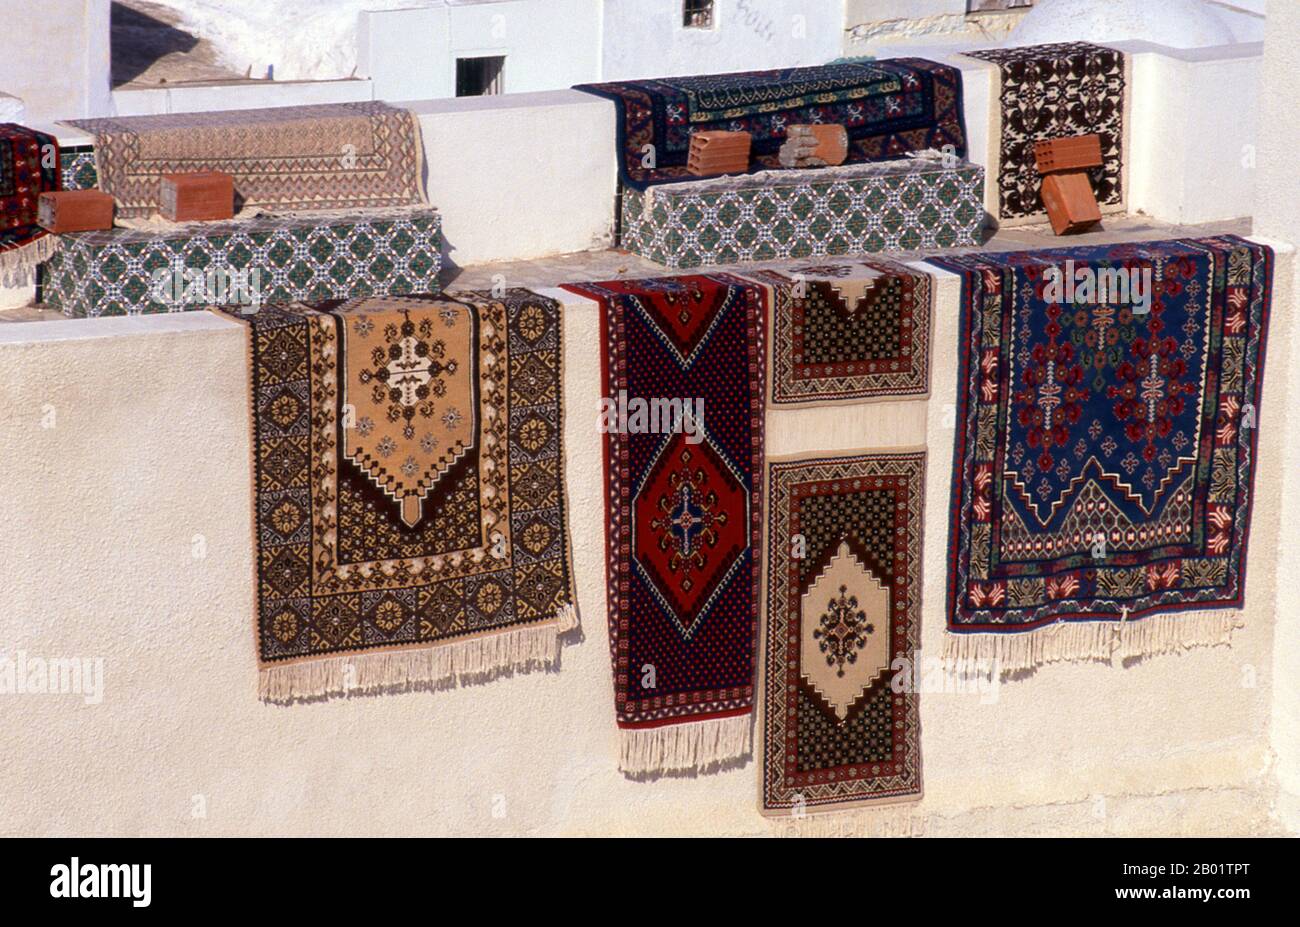 Tunisia: Tappeti orientali che si asciugano al sole sulle pareti bianche della medina Hammamet. Hammamet (dall'arabo al-hammamat, 'le terme') è conosciuta fin dall'epoca romana per la proprietà curativa delle sue acque. Le rovine romane sopravvivono ancora nei siti vicini di Siagum e Pupput, ma Hammamet nella sua forma attuale risale alla metà del XV secolo, quando furono costruiti la città vecchia, nota come medina, e il suq, o bazar principale. Hammamet medievale era preparata per la difesa - gli spagnoli fortificarono la kasbah nel XVI secolo - ma in realtà la storia della città è stata piacevolmente pacifica. Foto Stock